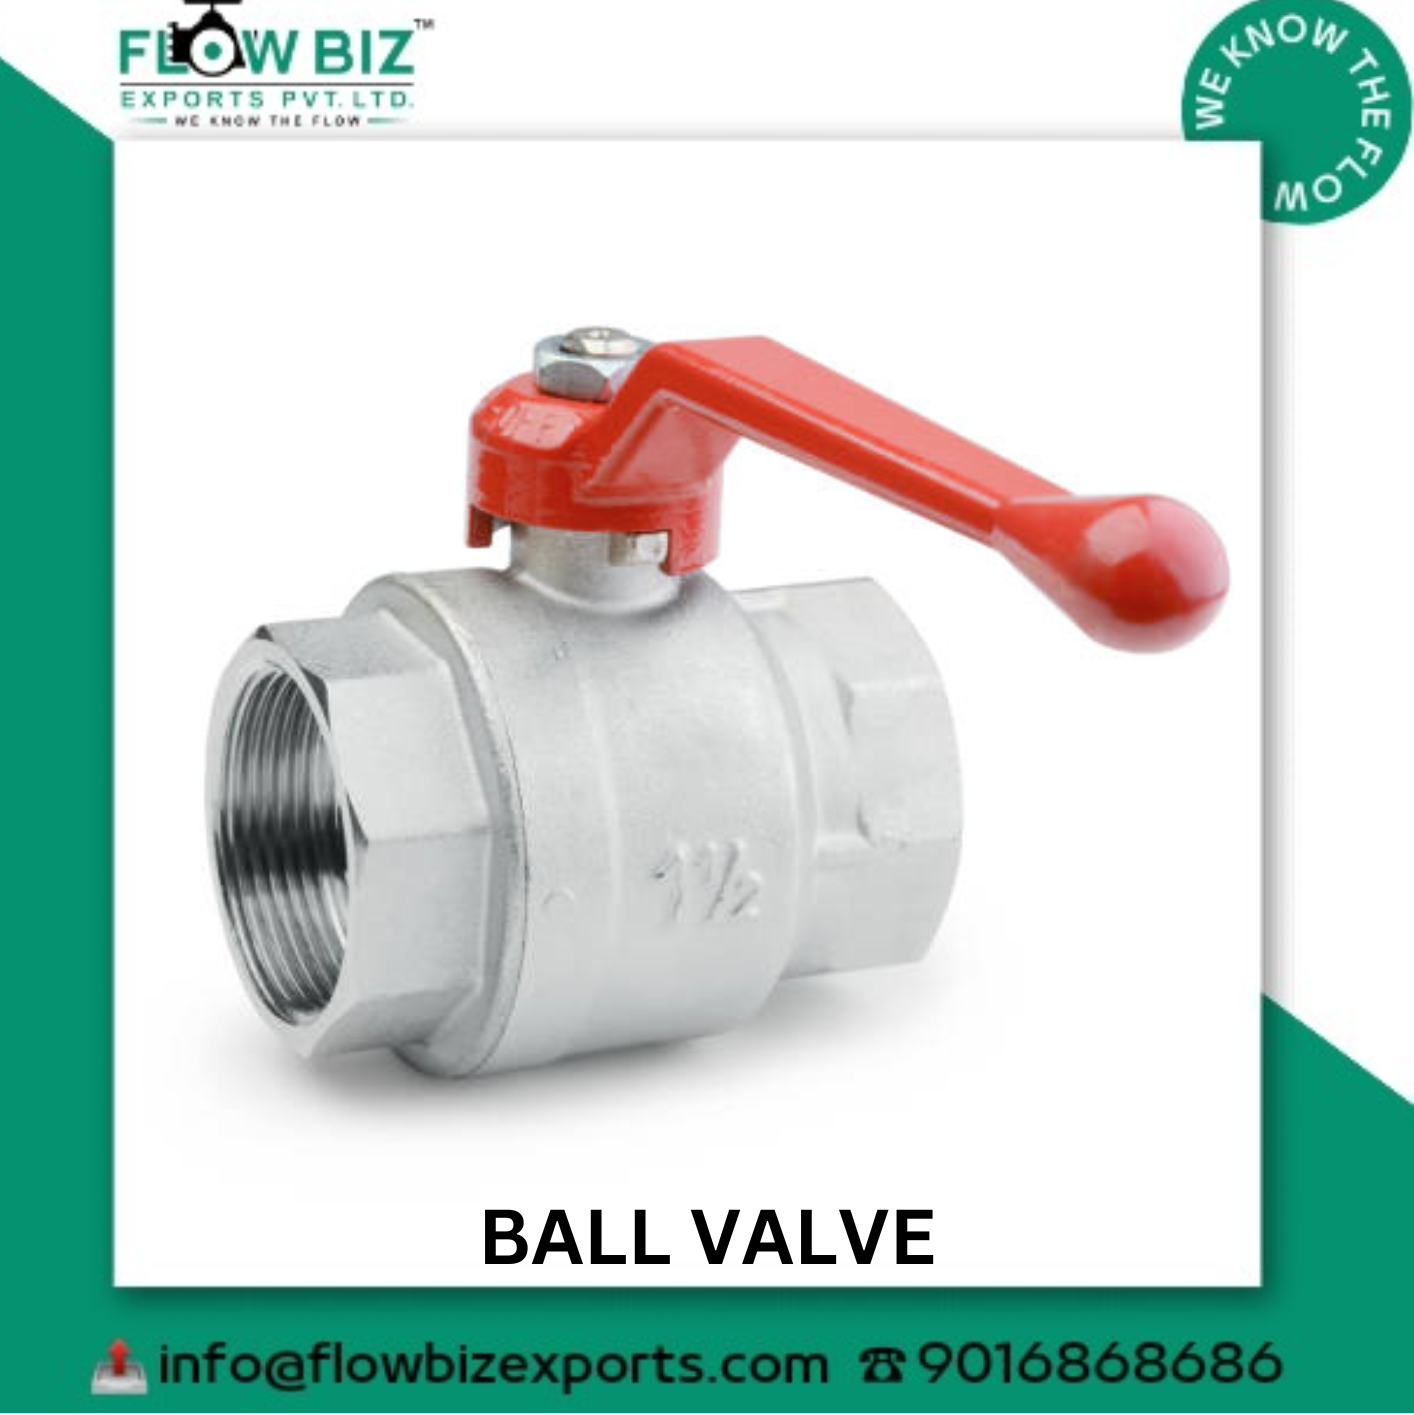 ball valve manufacturer and exporter mumbai - FlowBiz